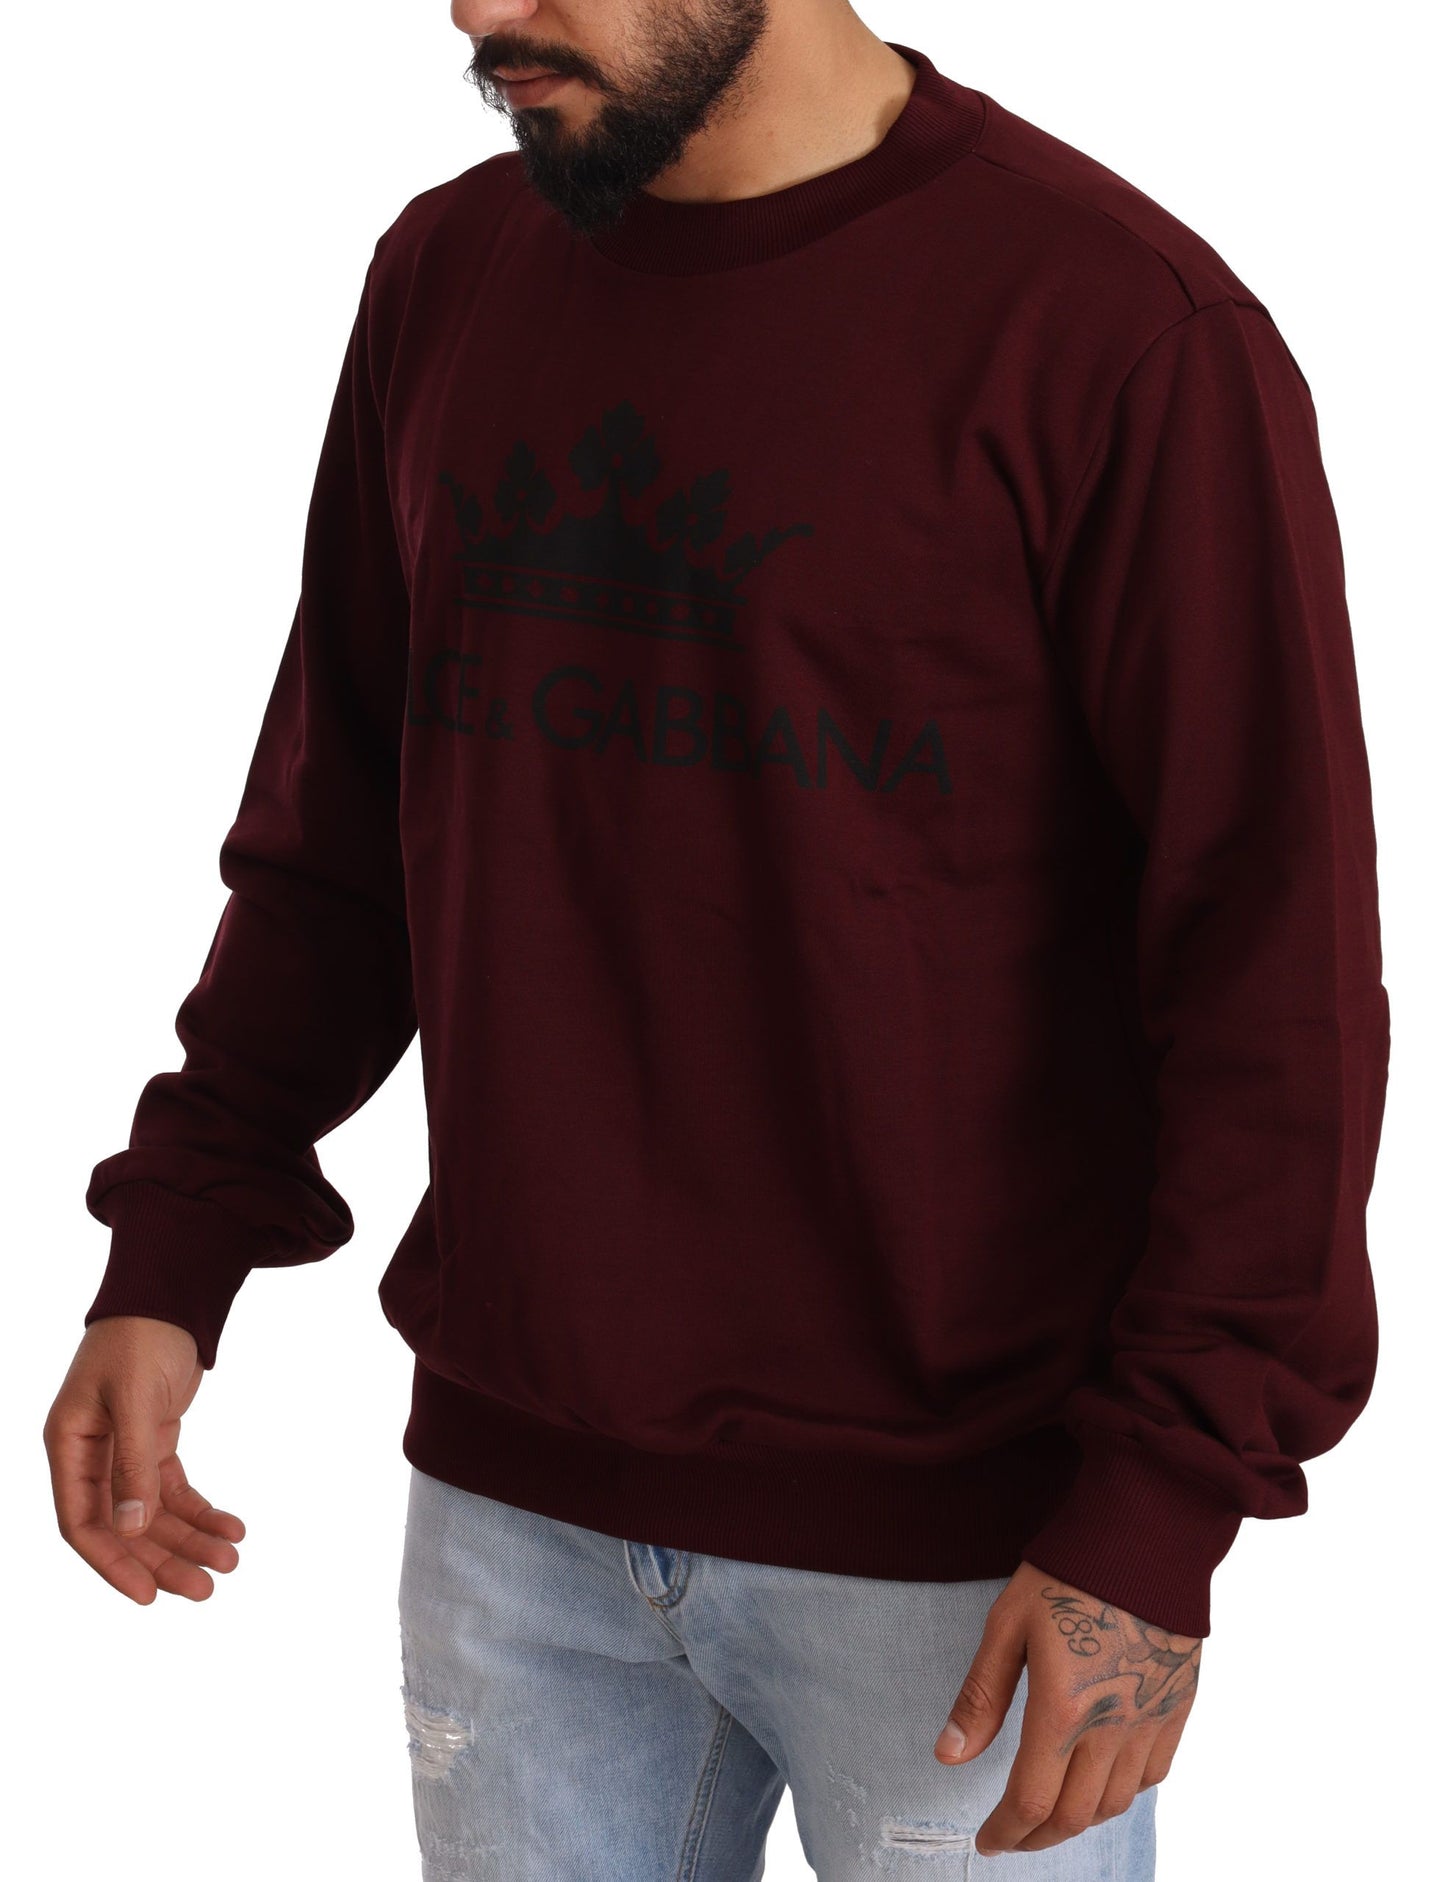 Elegant Bordeaux Crown Motive Sweater